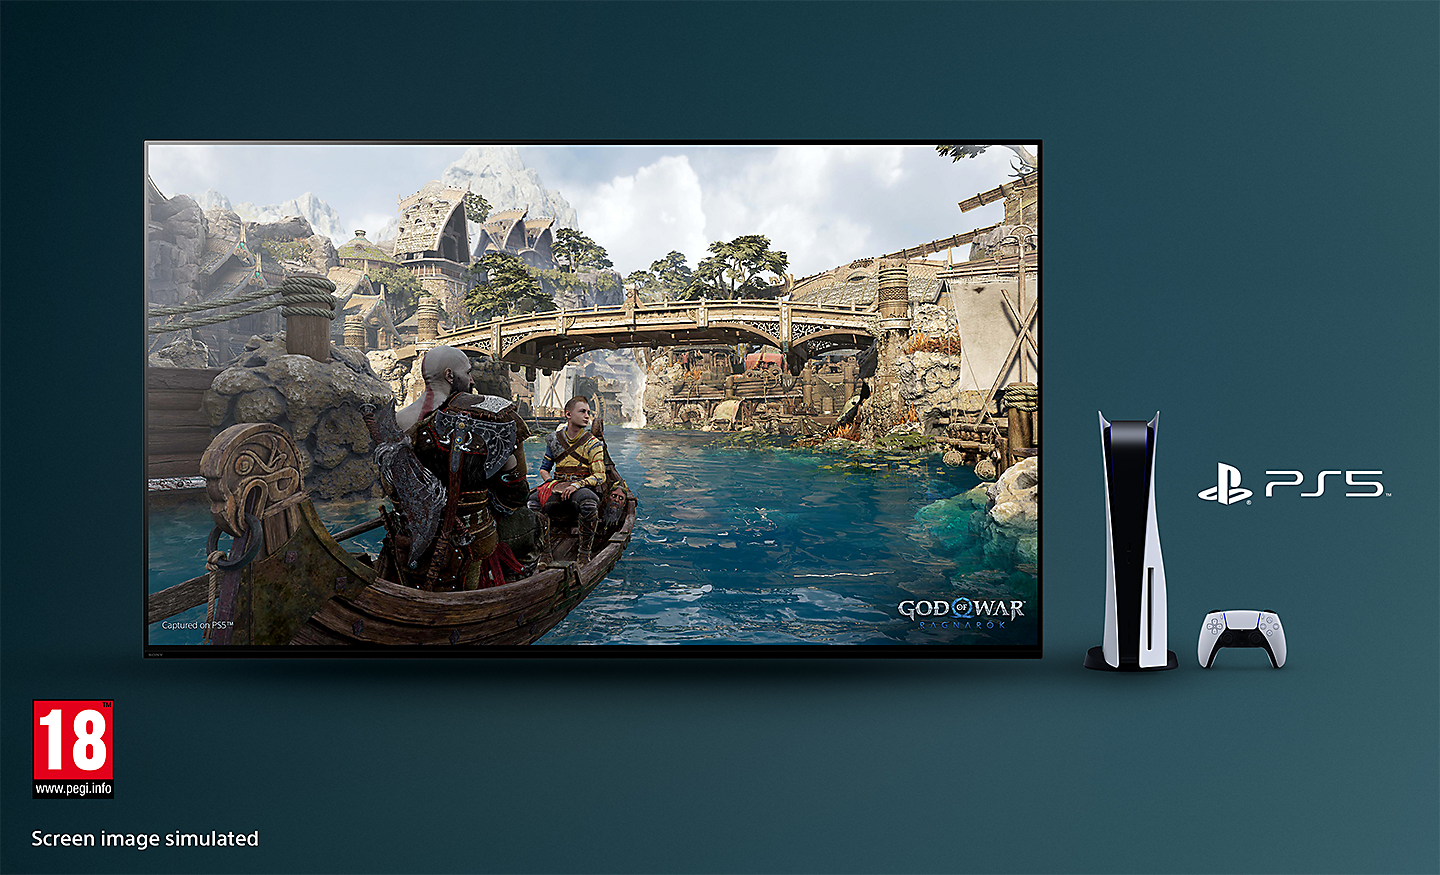 BRAVIA TV med skærmbillede fra God of War: Ragnarok, der viser en båd på en flod og en bro i baggrunden, med PS5™-konsol, controller og PS5™-logo til højre for TV'et og PEGI 18-logoet nederst til højre